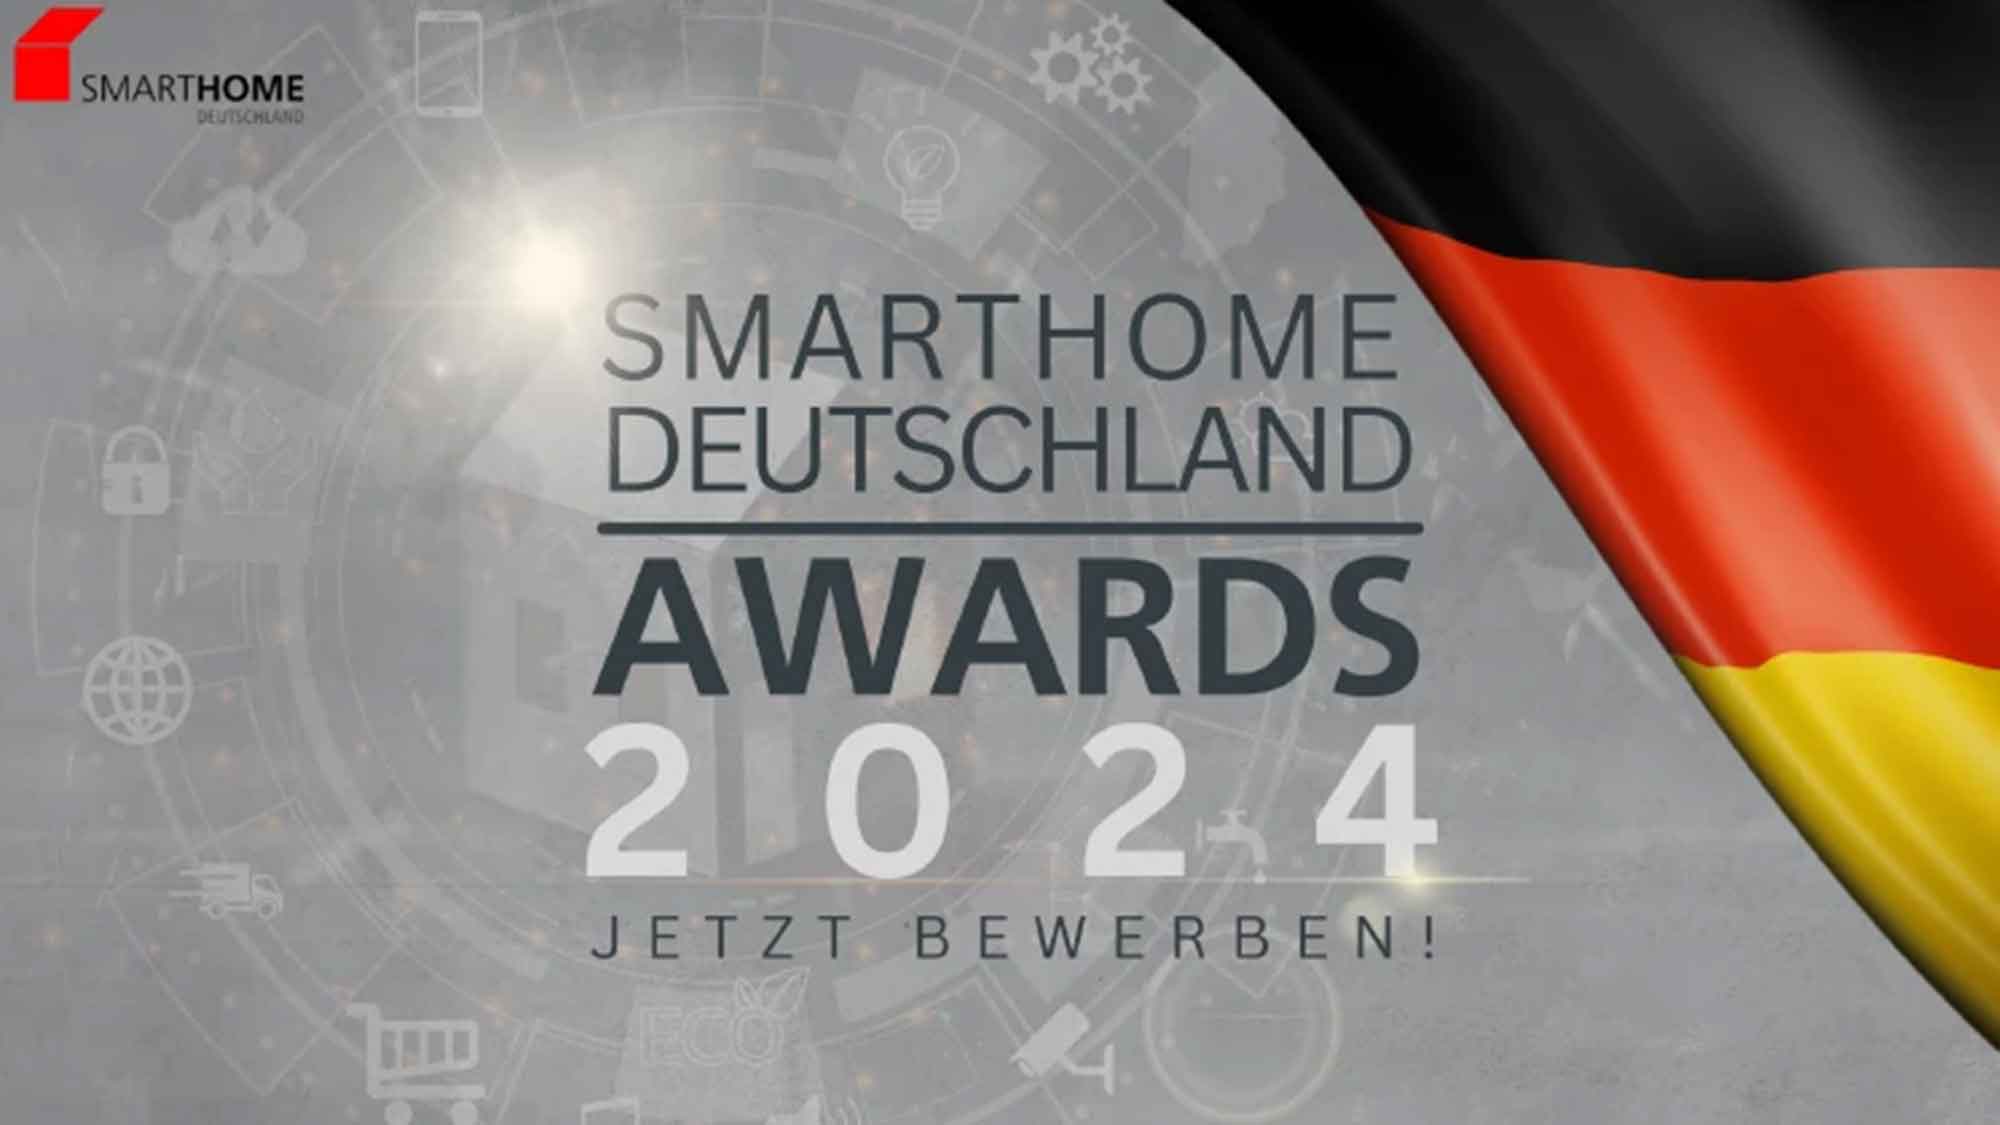 »SmartHome« Deutschland Awards 2024: Jetzt bewerben!